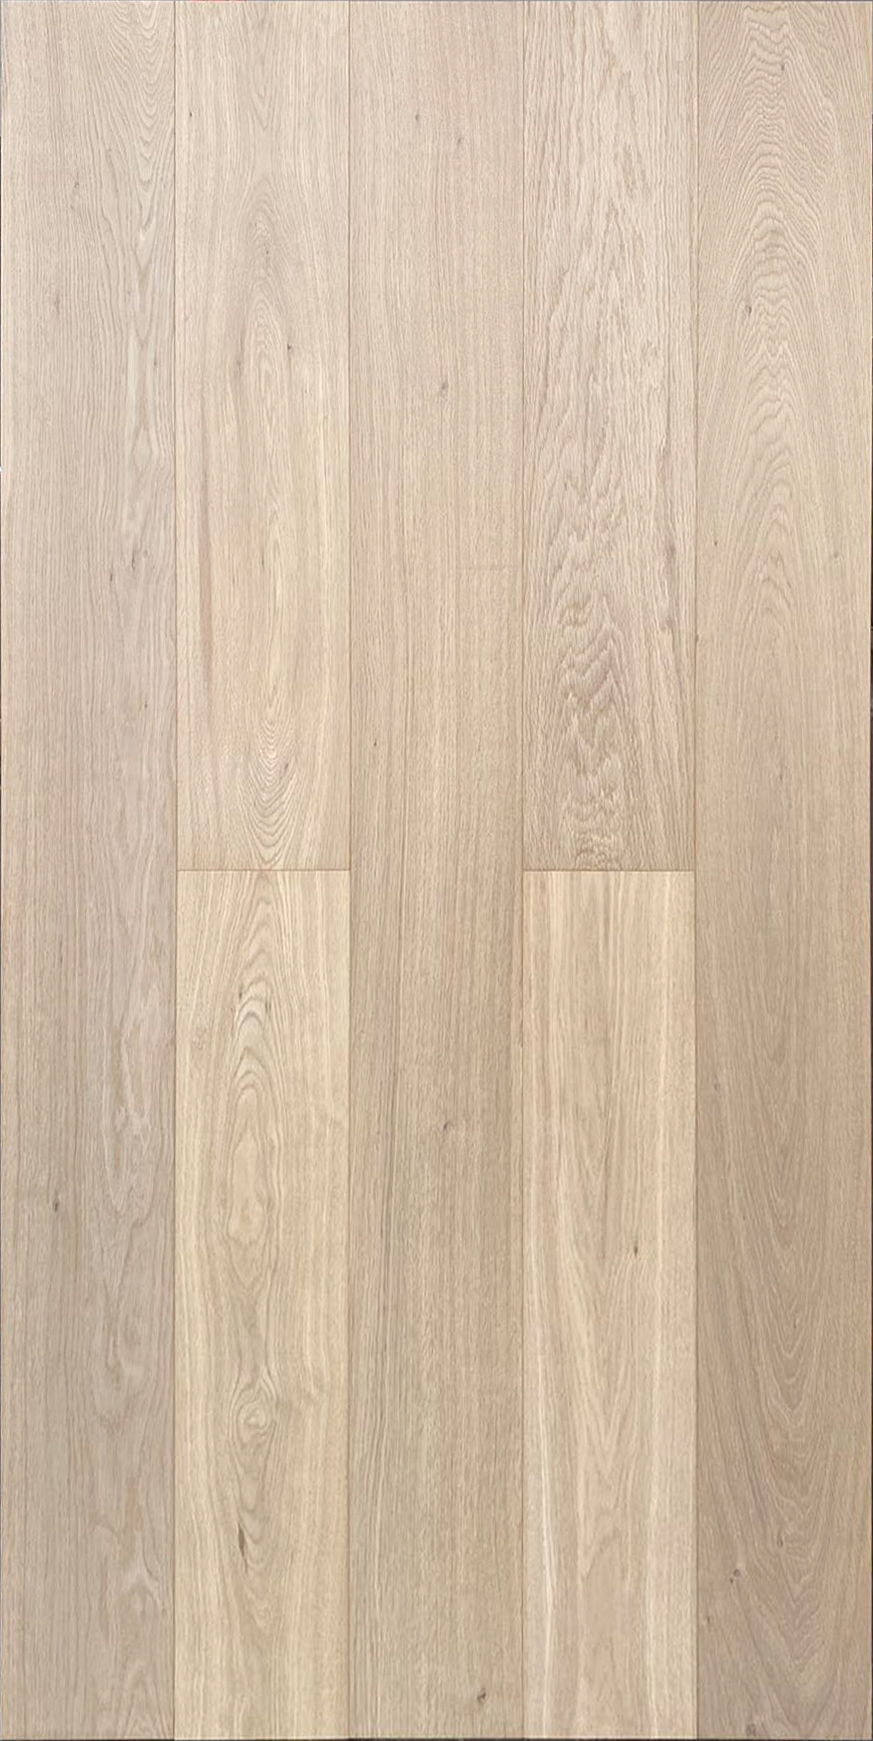 ABC Plank Oak Flooring